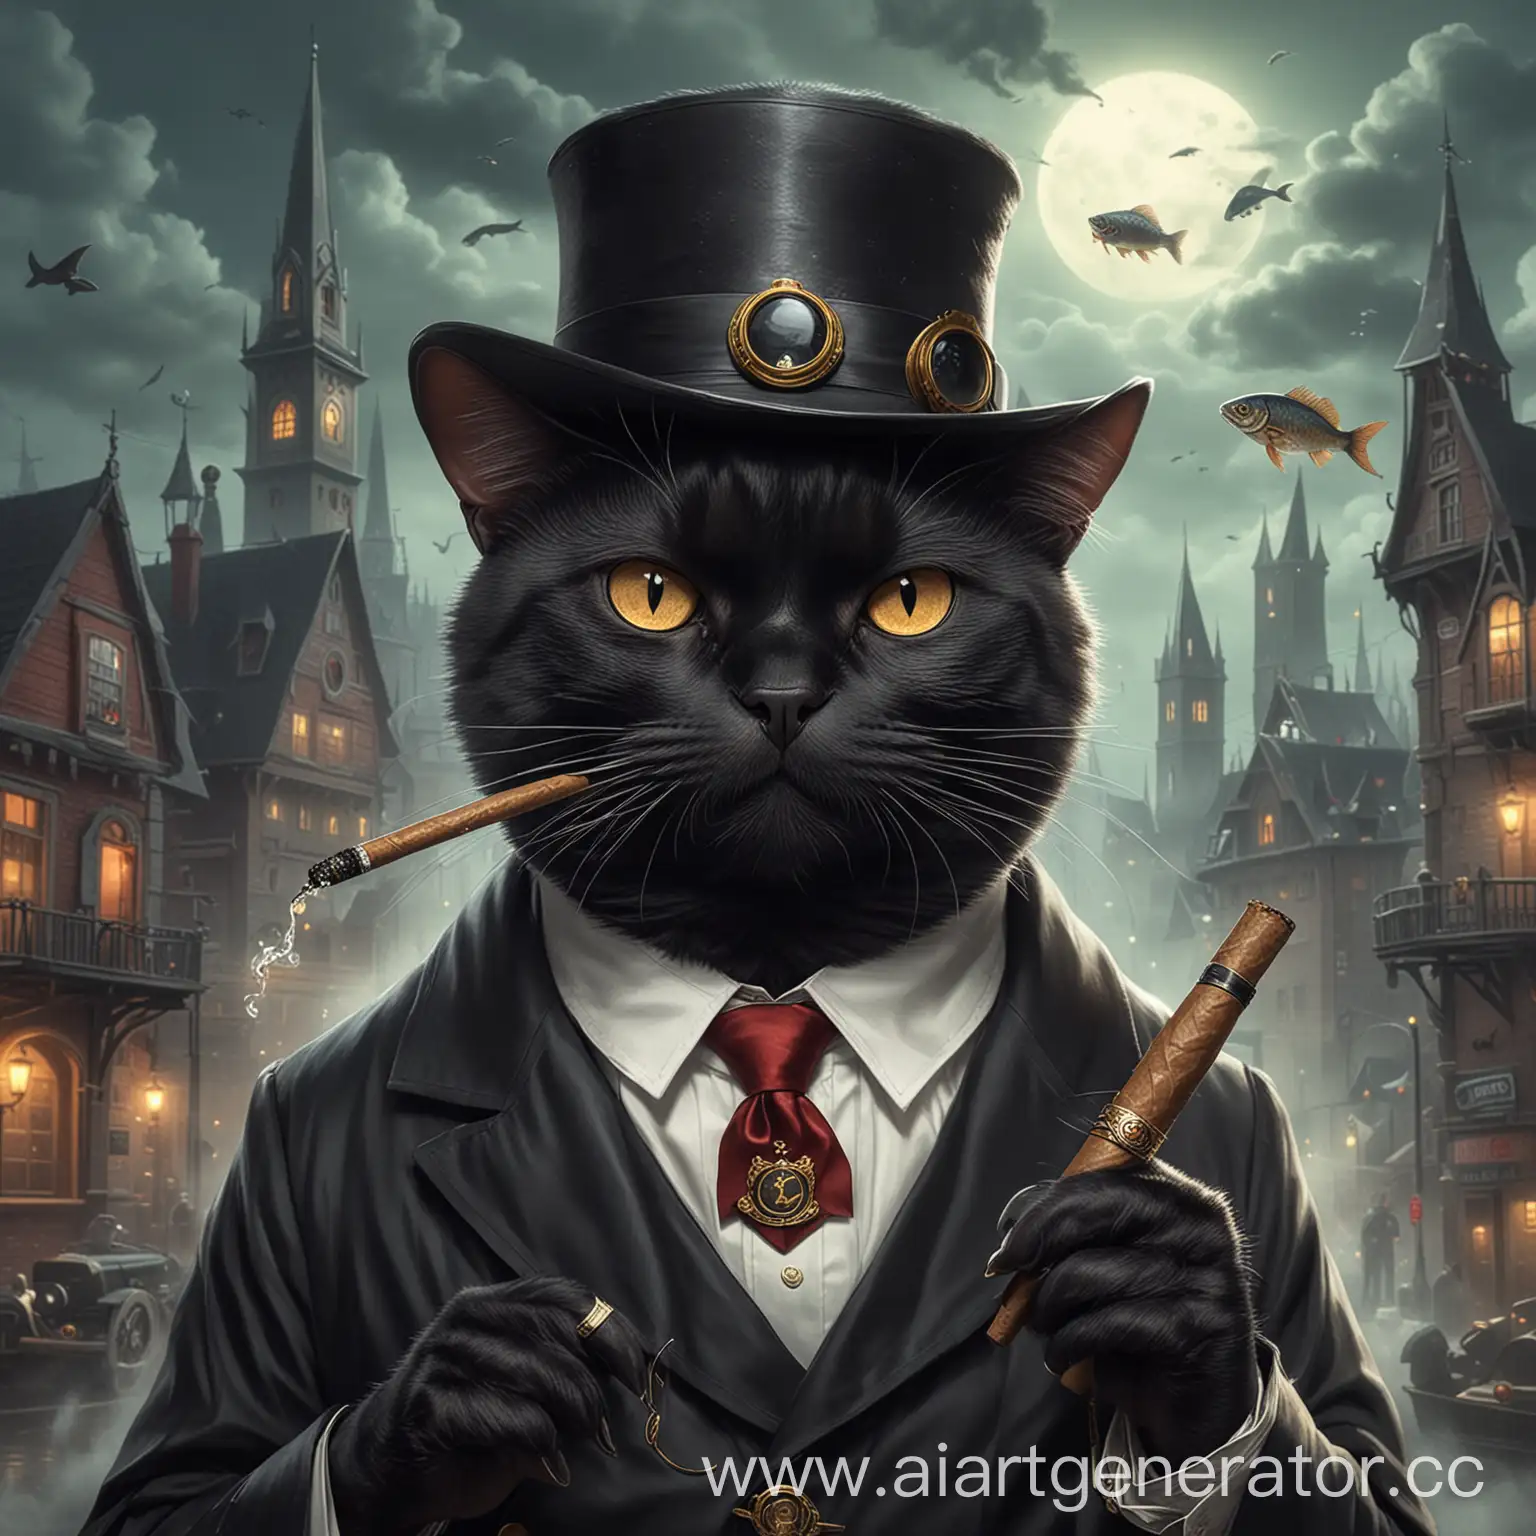 черный злой кот мэр кошачьего города с сигарой и рыбкой